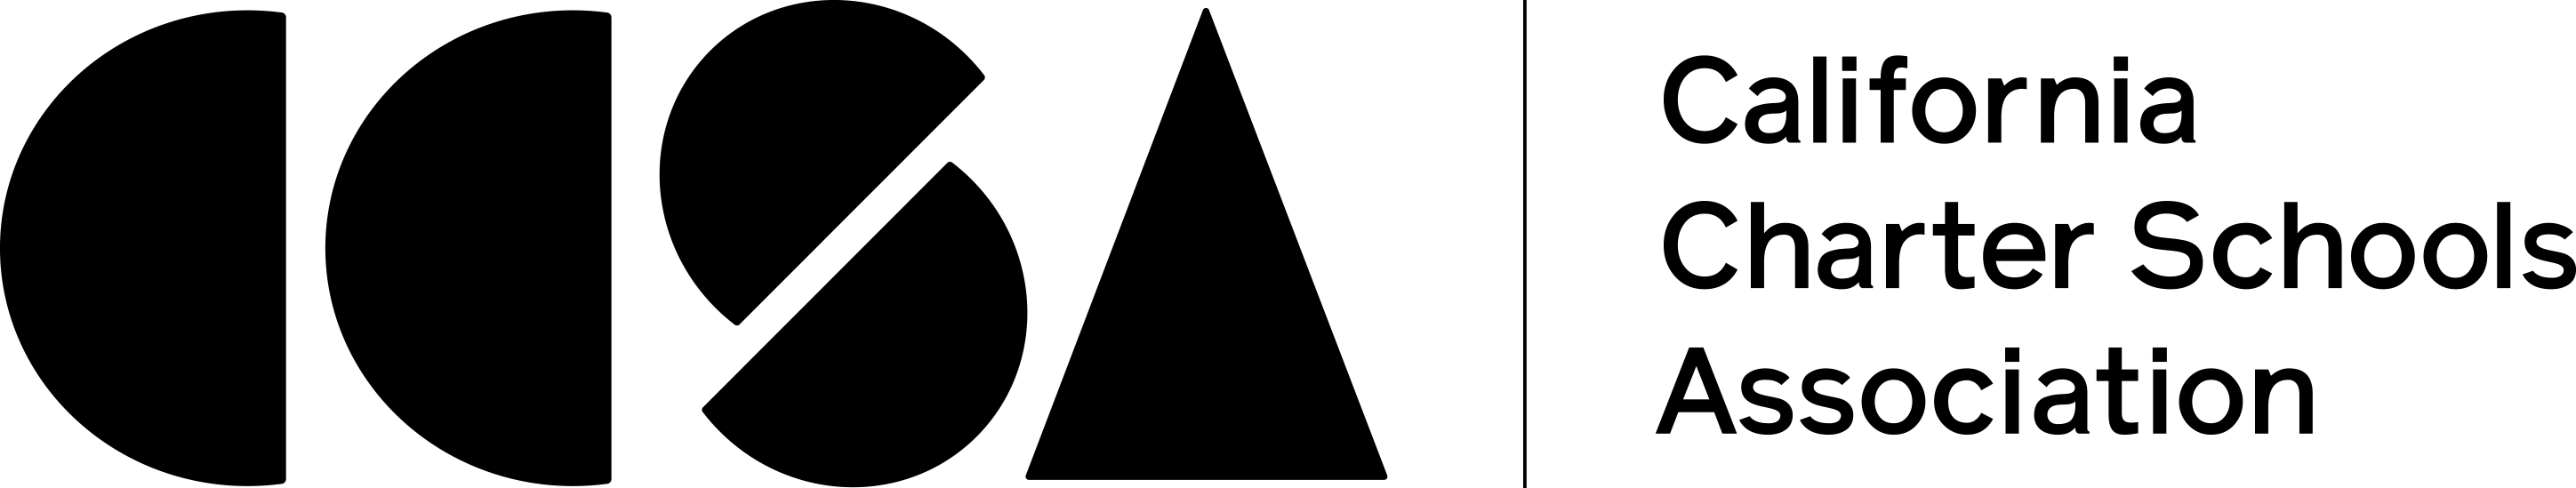 CCSA Logo Black